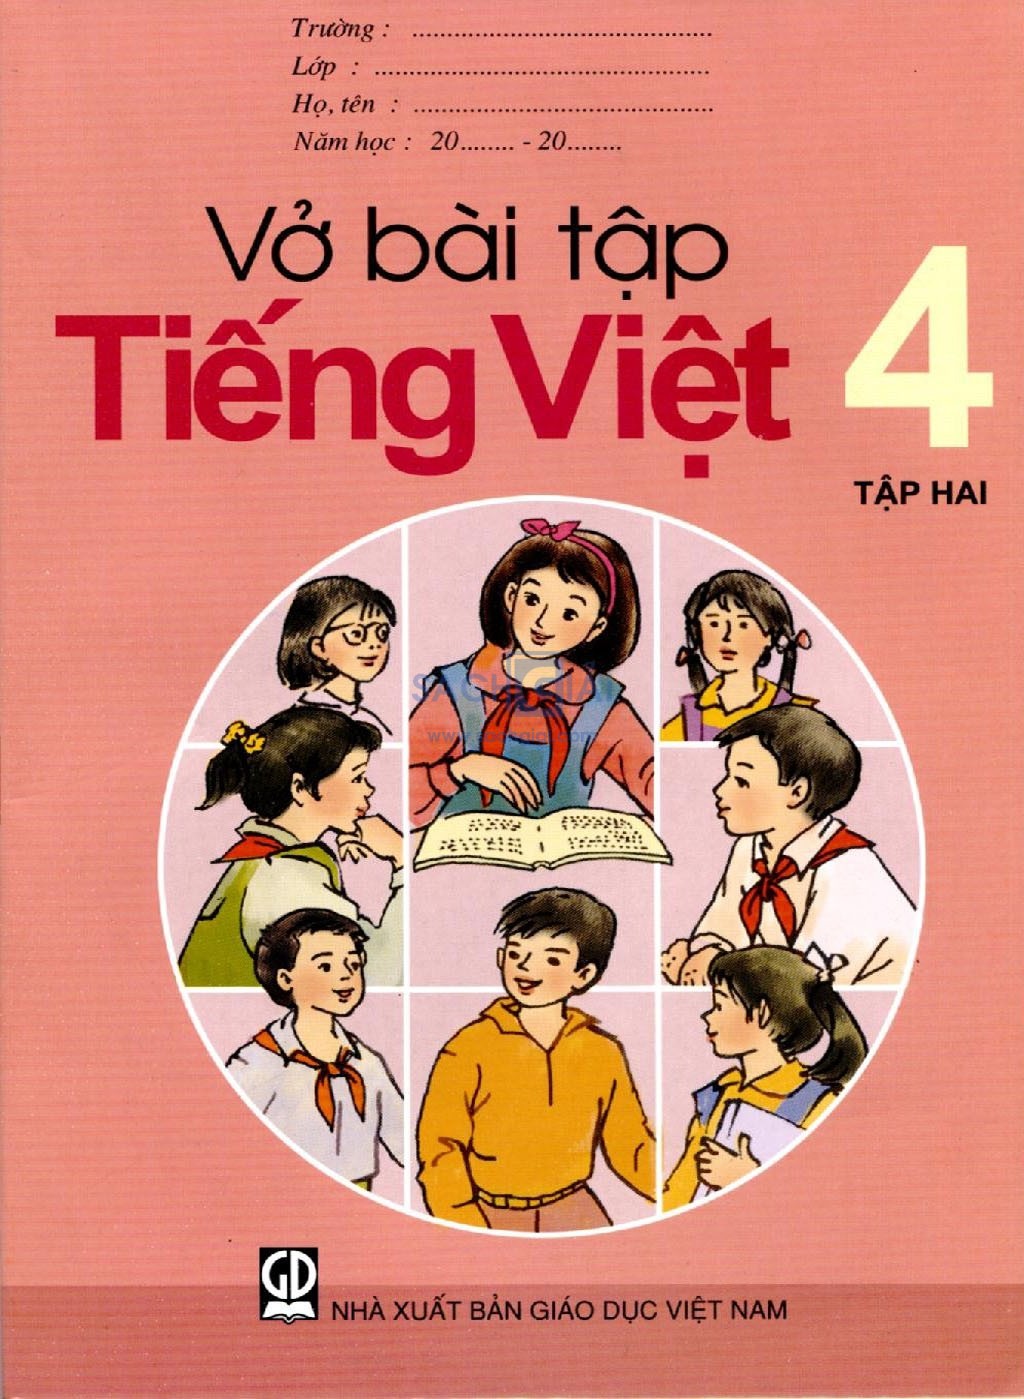 Vở bài tập Tiếng Việt lớp 4 Tập 2 trang 86, 87